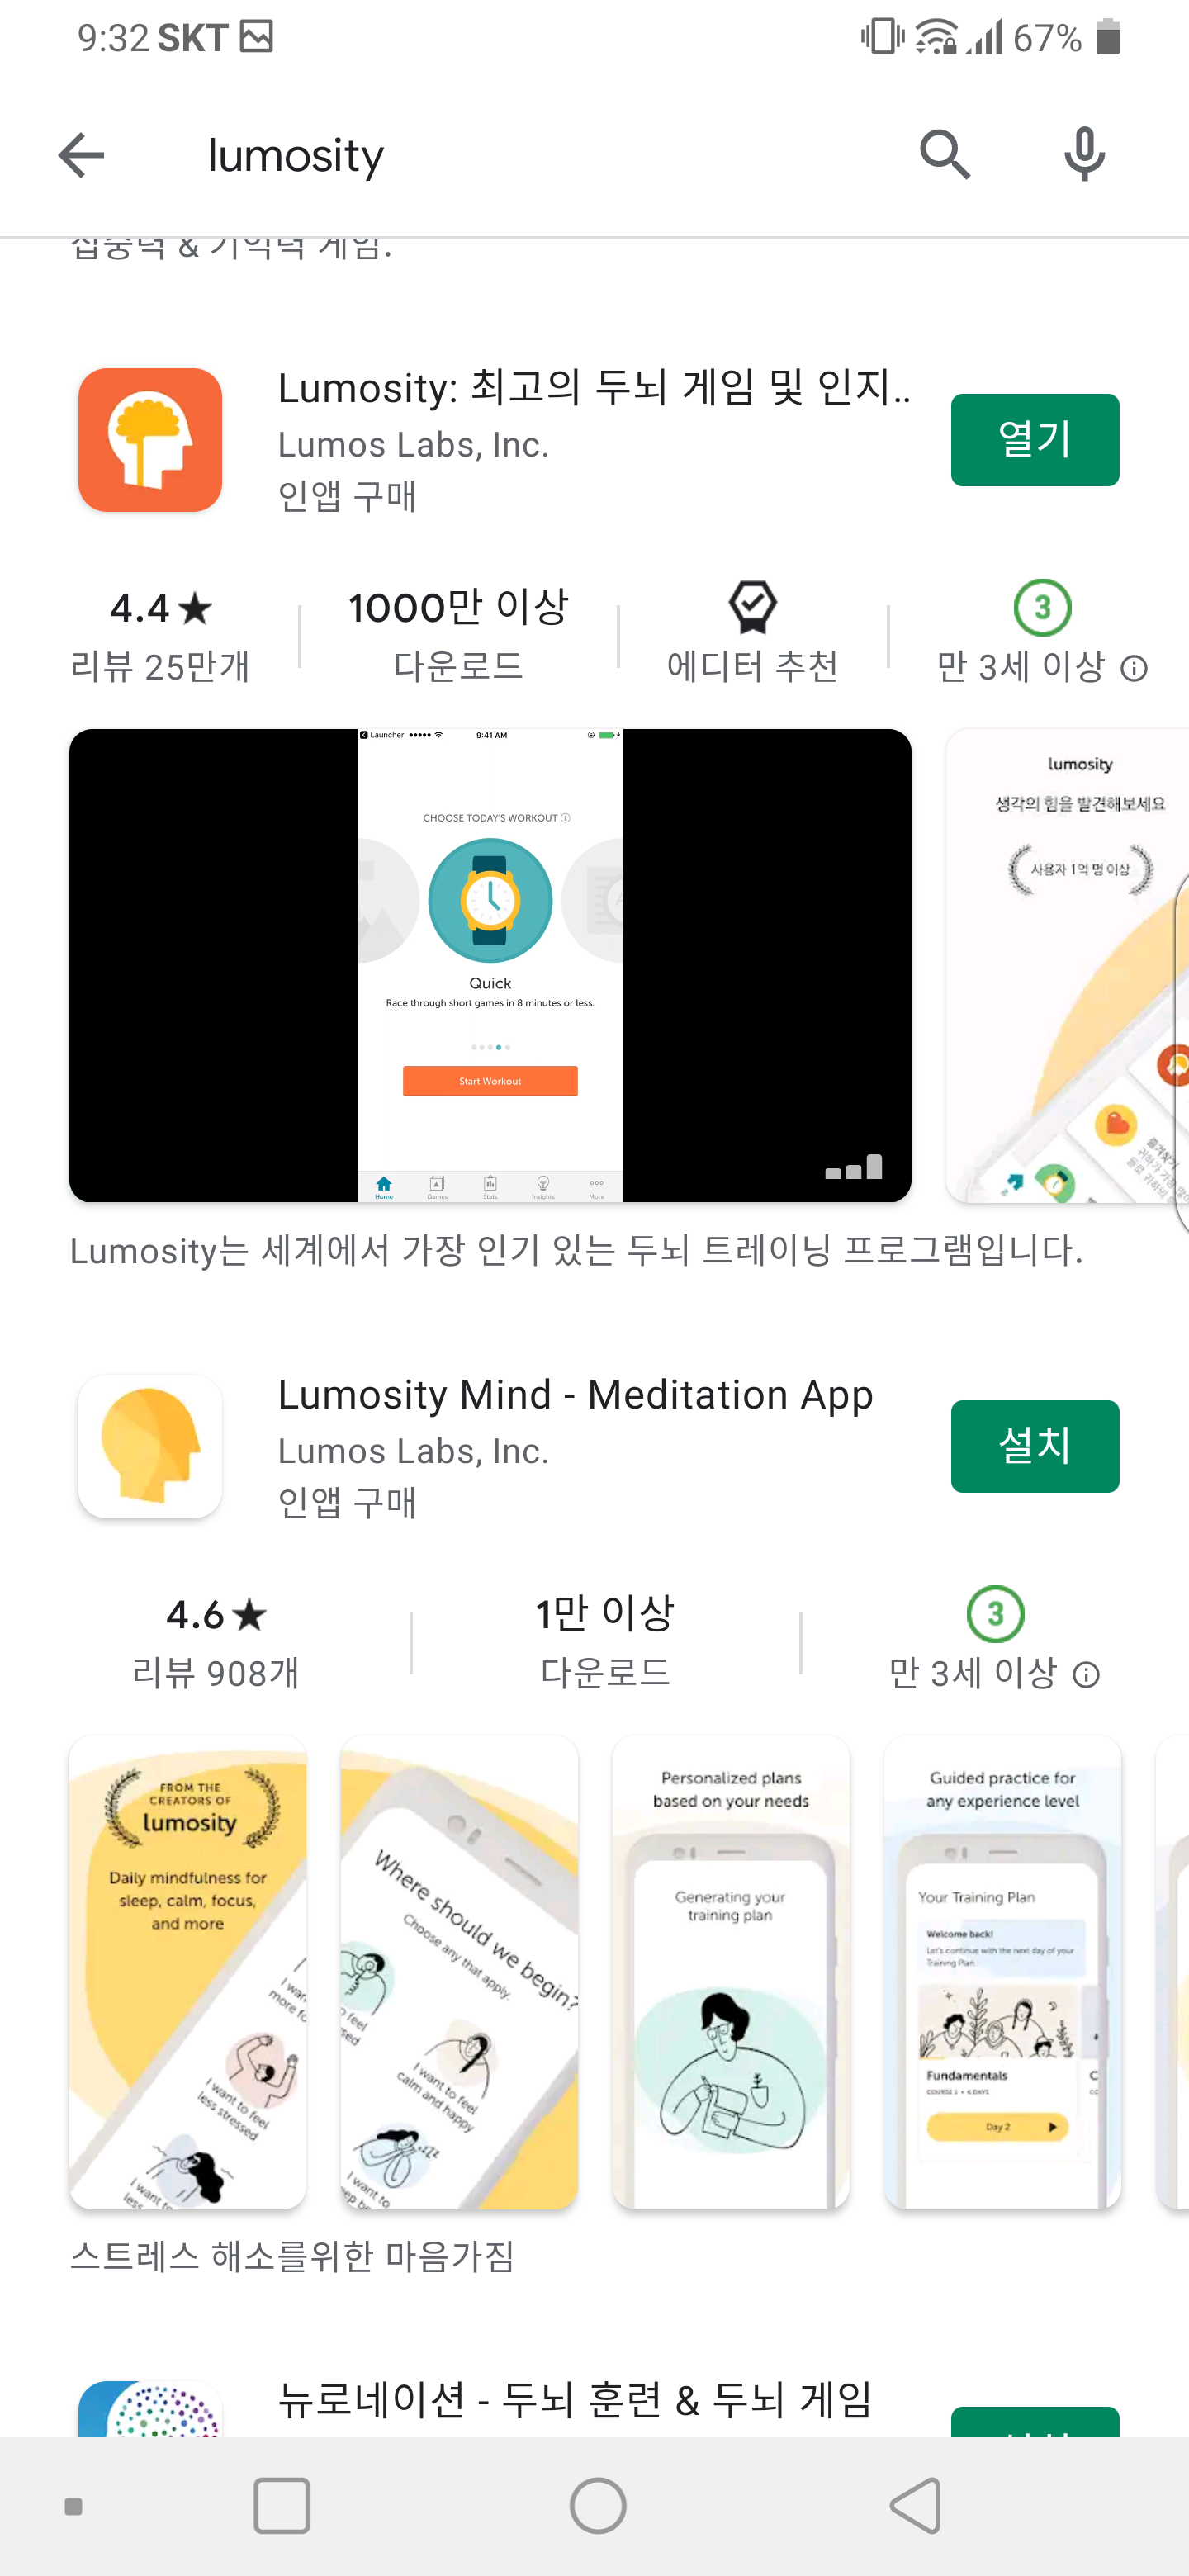 Lumosity 두뇌게임 앱다운로드수 1000만 이상